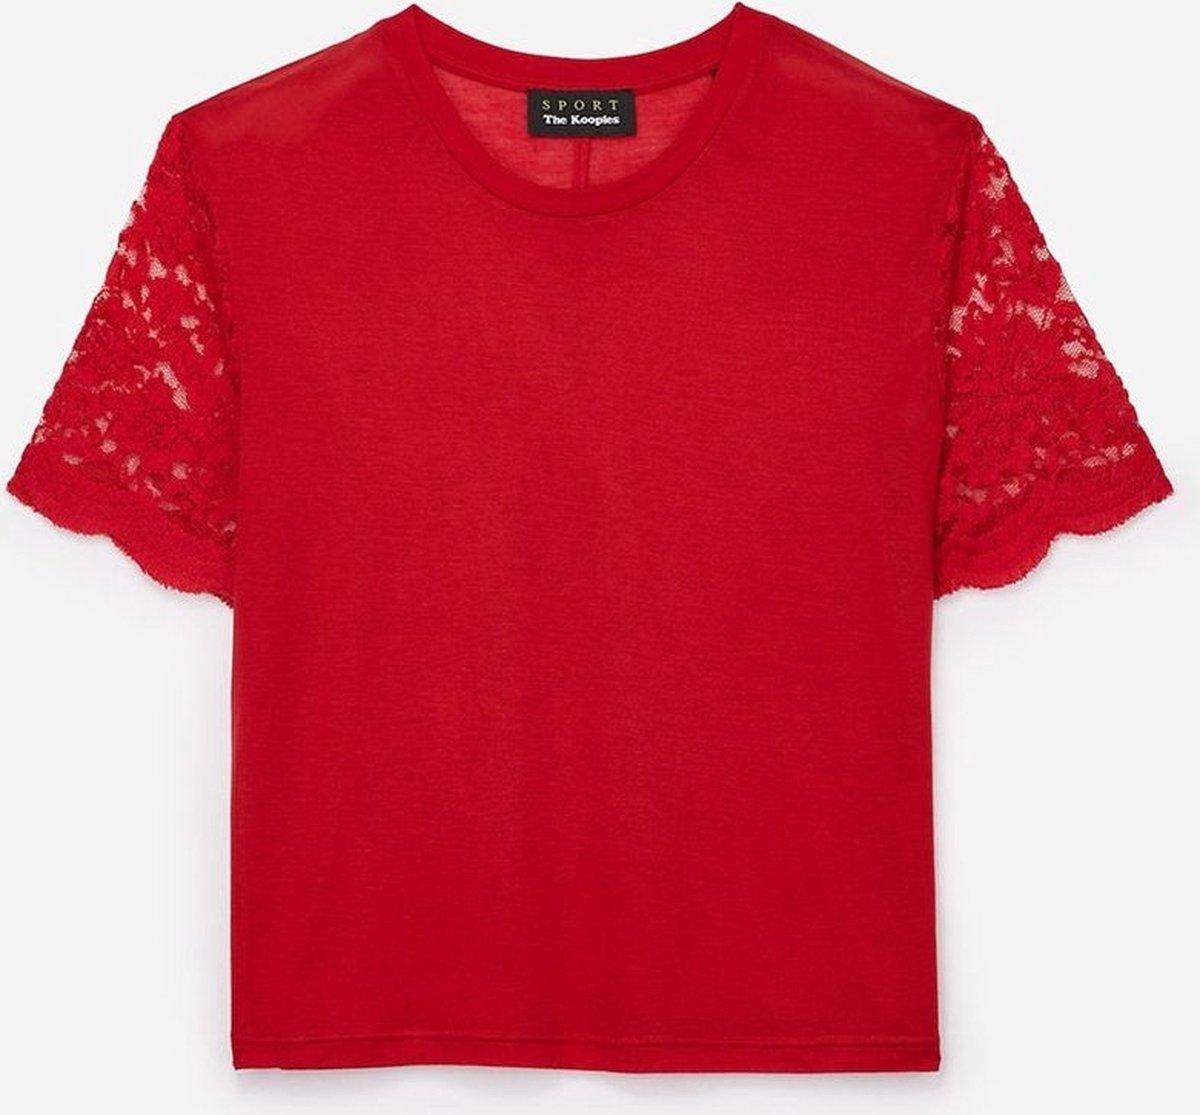 The Kooples • rood t-shirt met kanten mouwen • maat M (2)